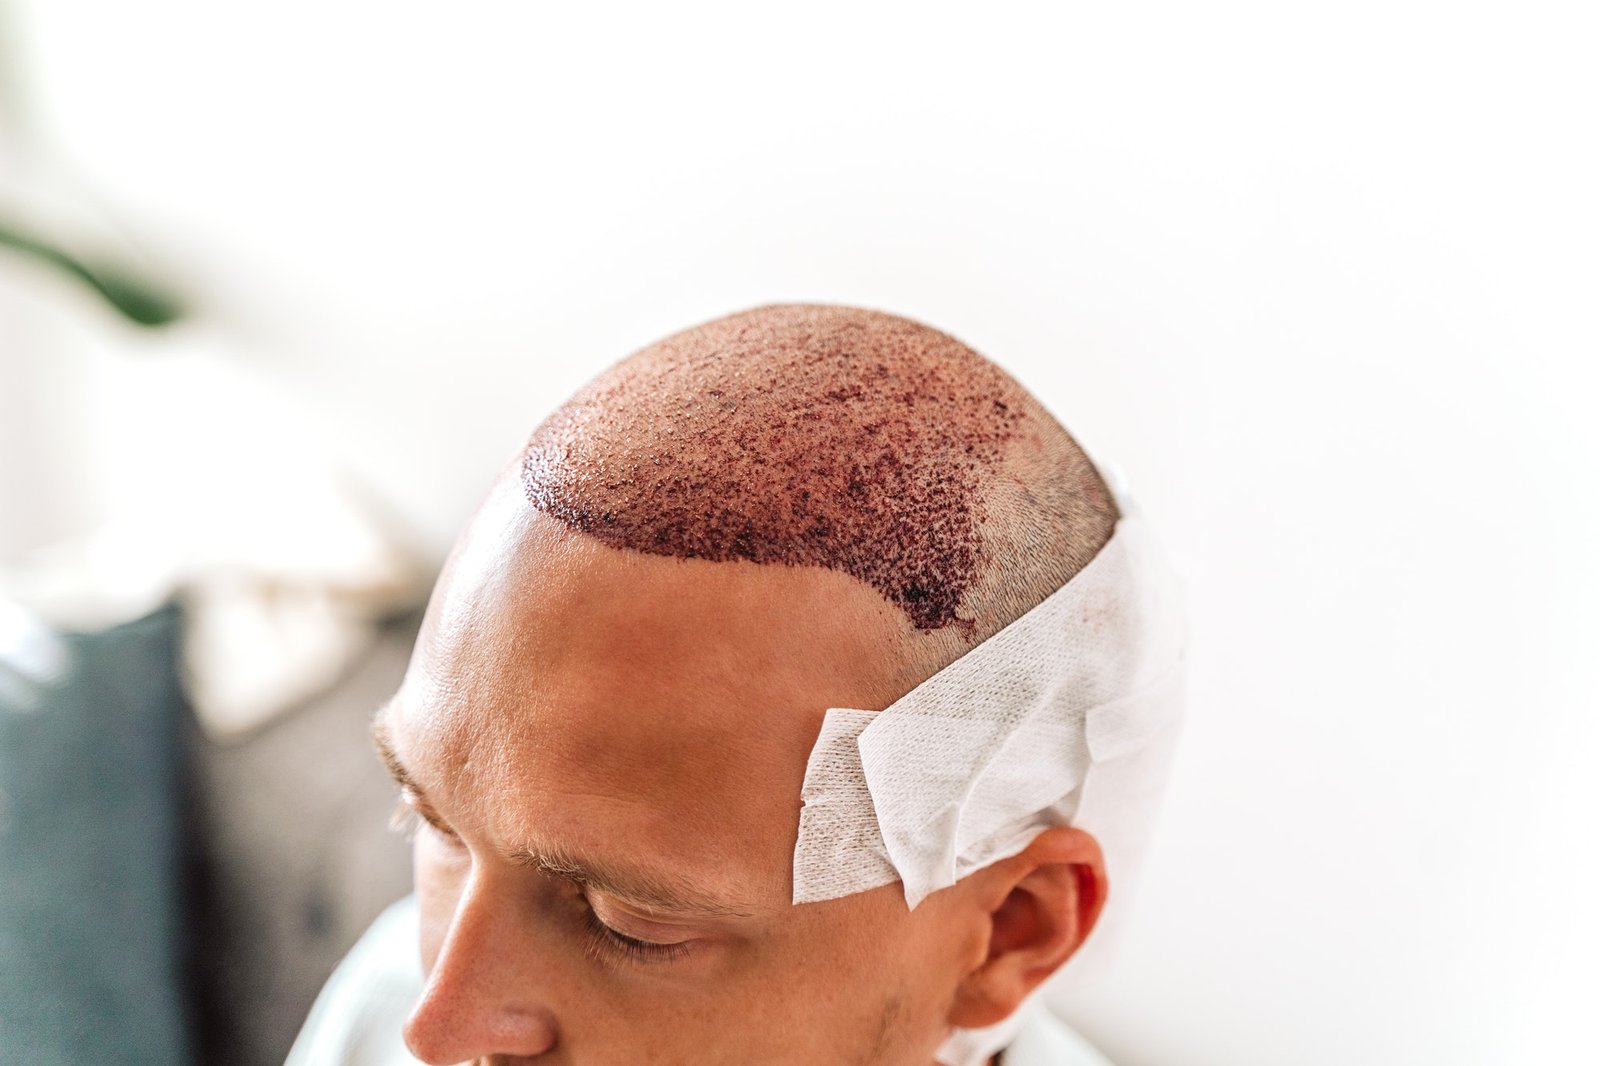 hårtransplantasjon er en av de mest vanlige metodenen for å kjempe mot hårtap